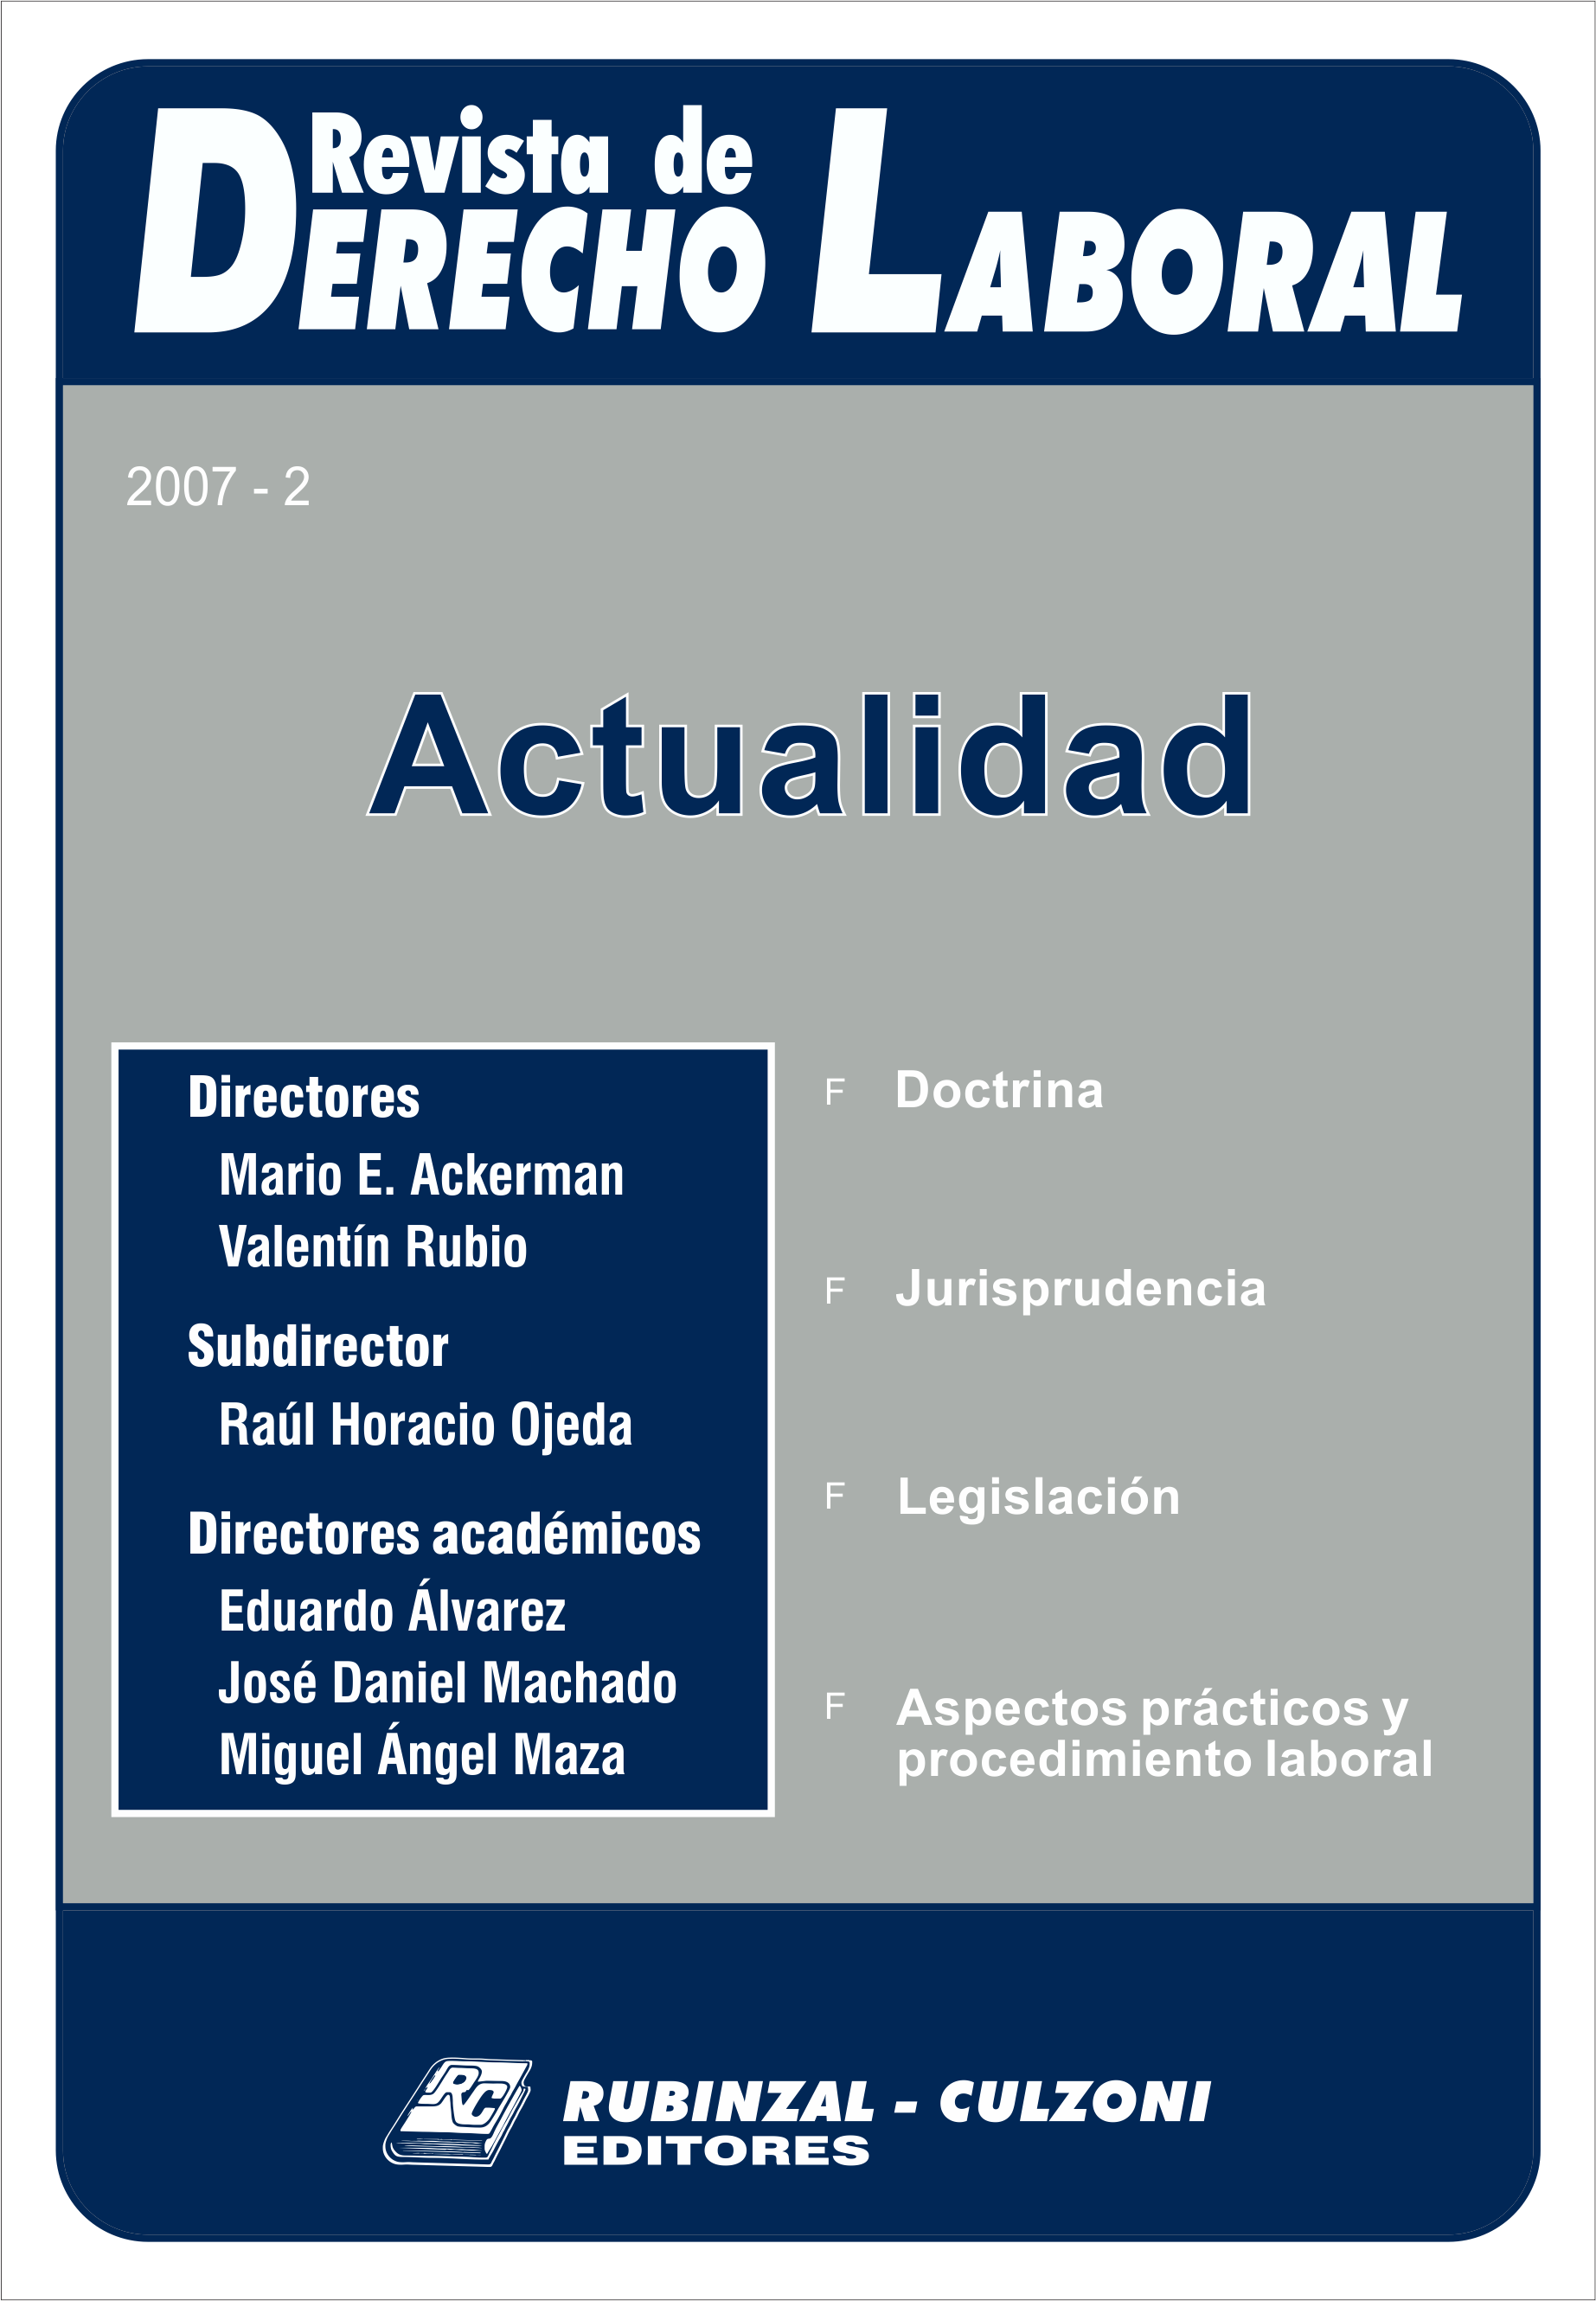  Actualidad - Año 2007 - 2. [2007-2]